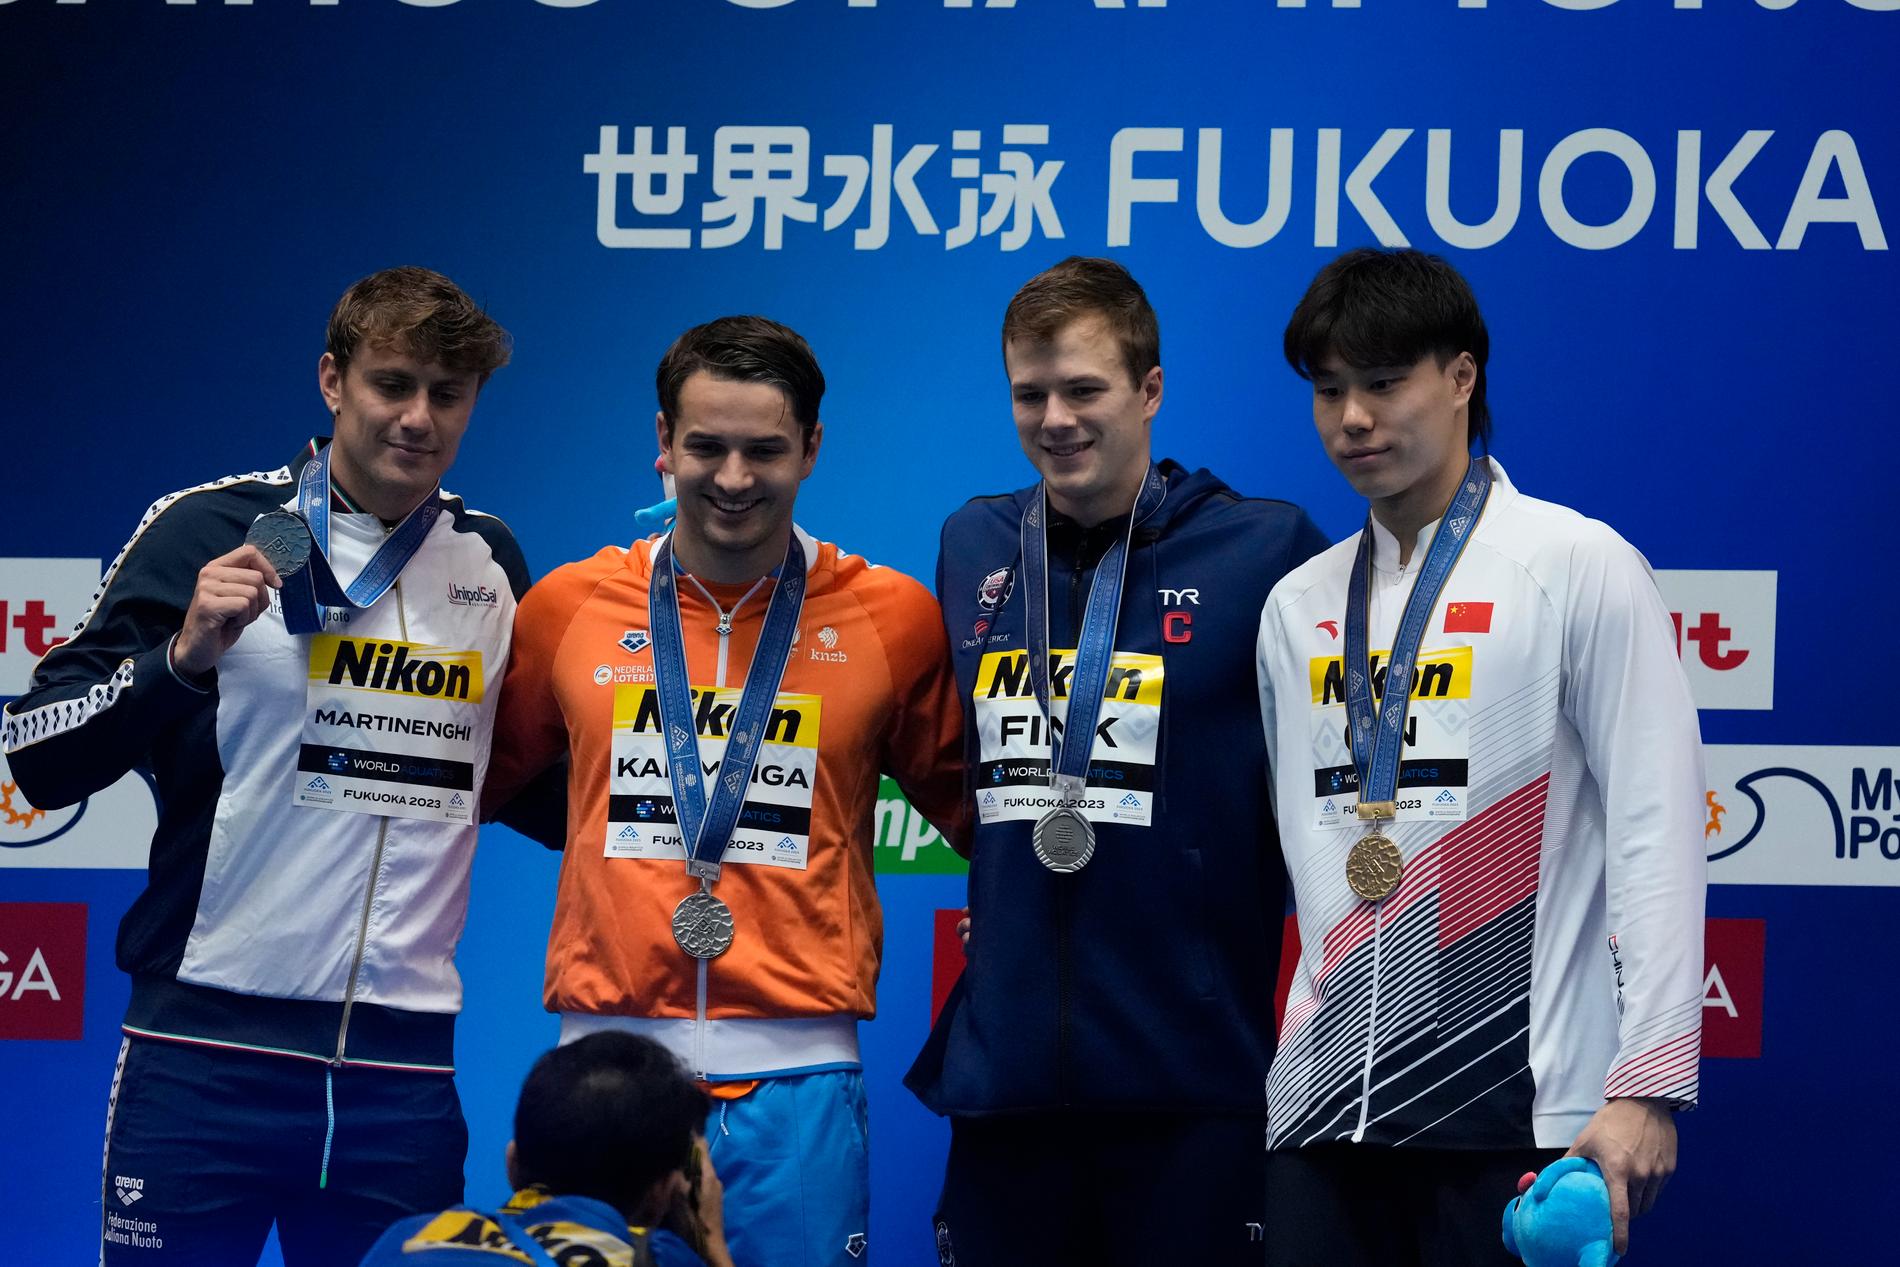 Kinesiske guldvinnaren Qin Haiyang, till höger, bredvid silvertrion Nic Fink, Arno Kamminga och Nicolo Martinenghi.